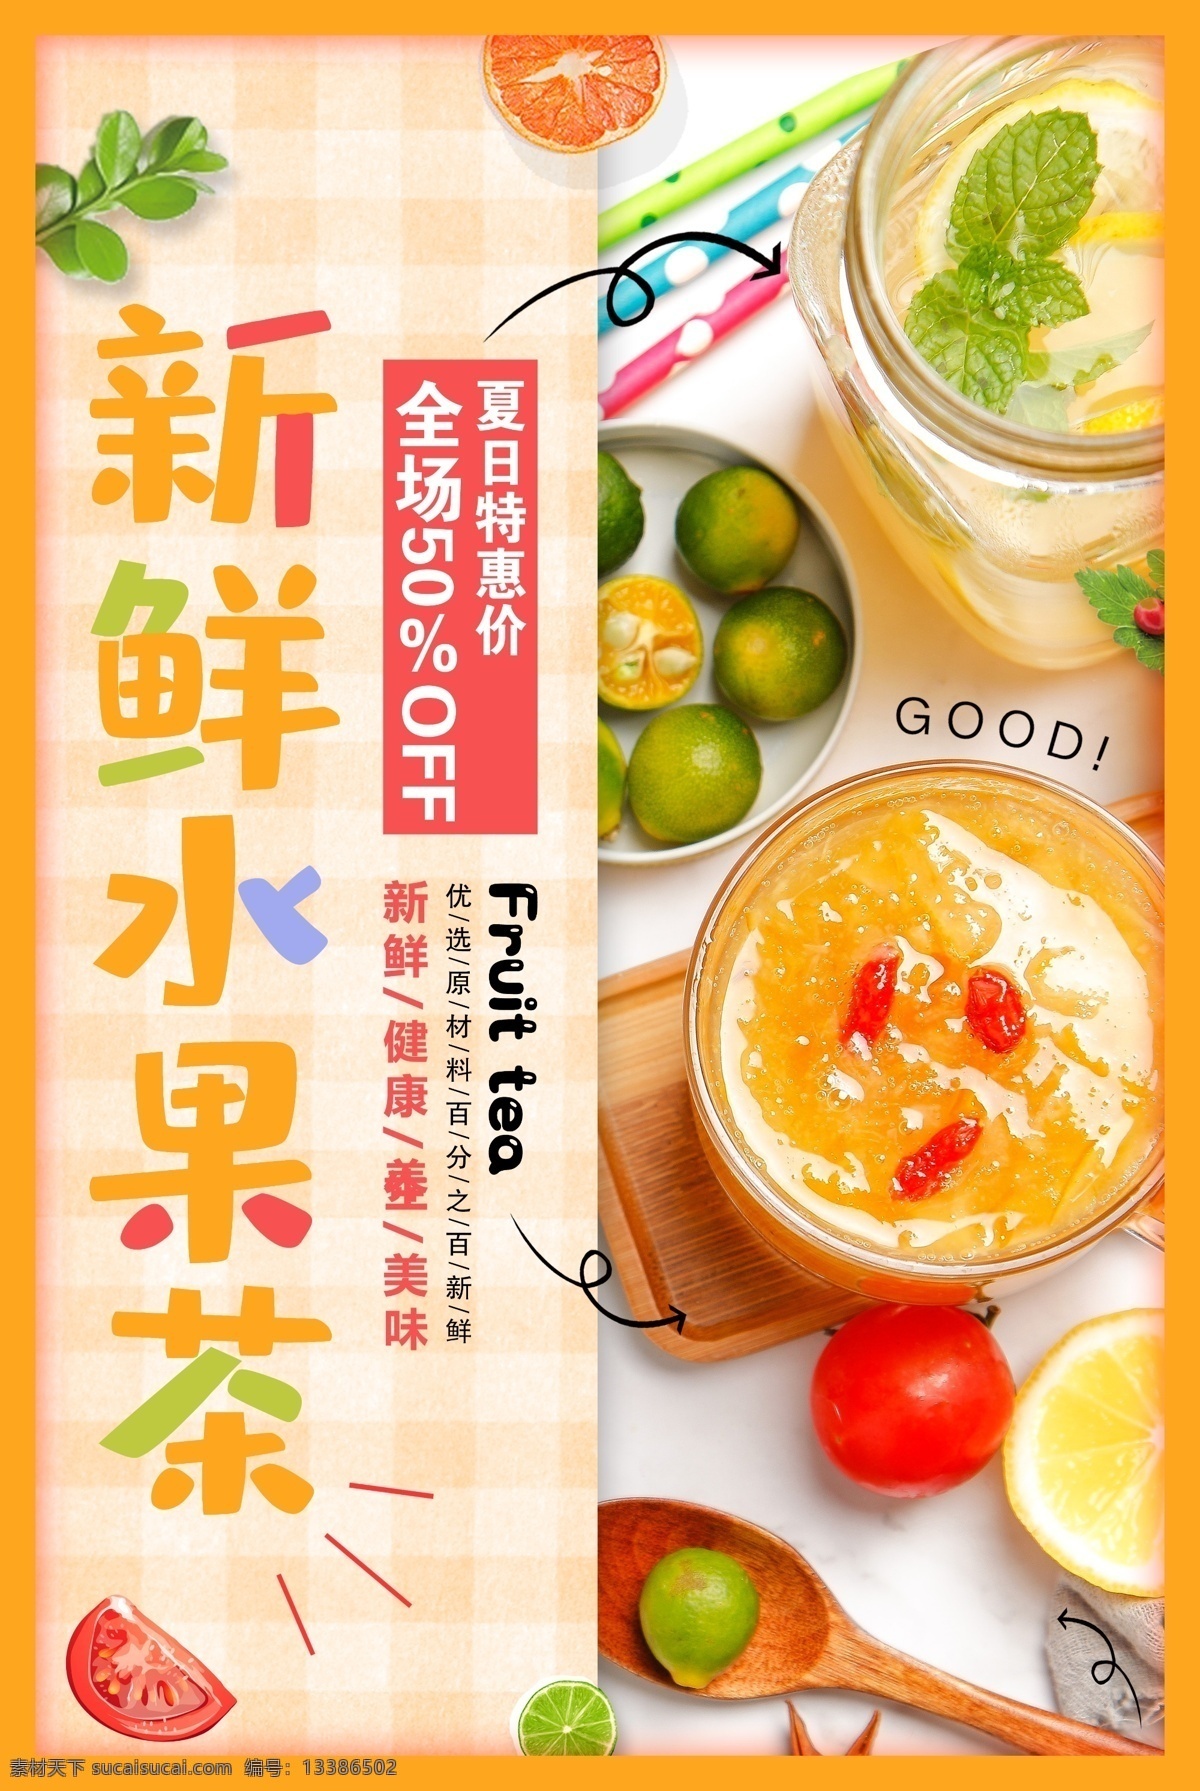 新鲜 水果 茶饮 品饮 料 夏季 活动 海报 新鲜水果茶 饮品 饮料 甜品 类